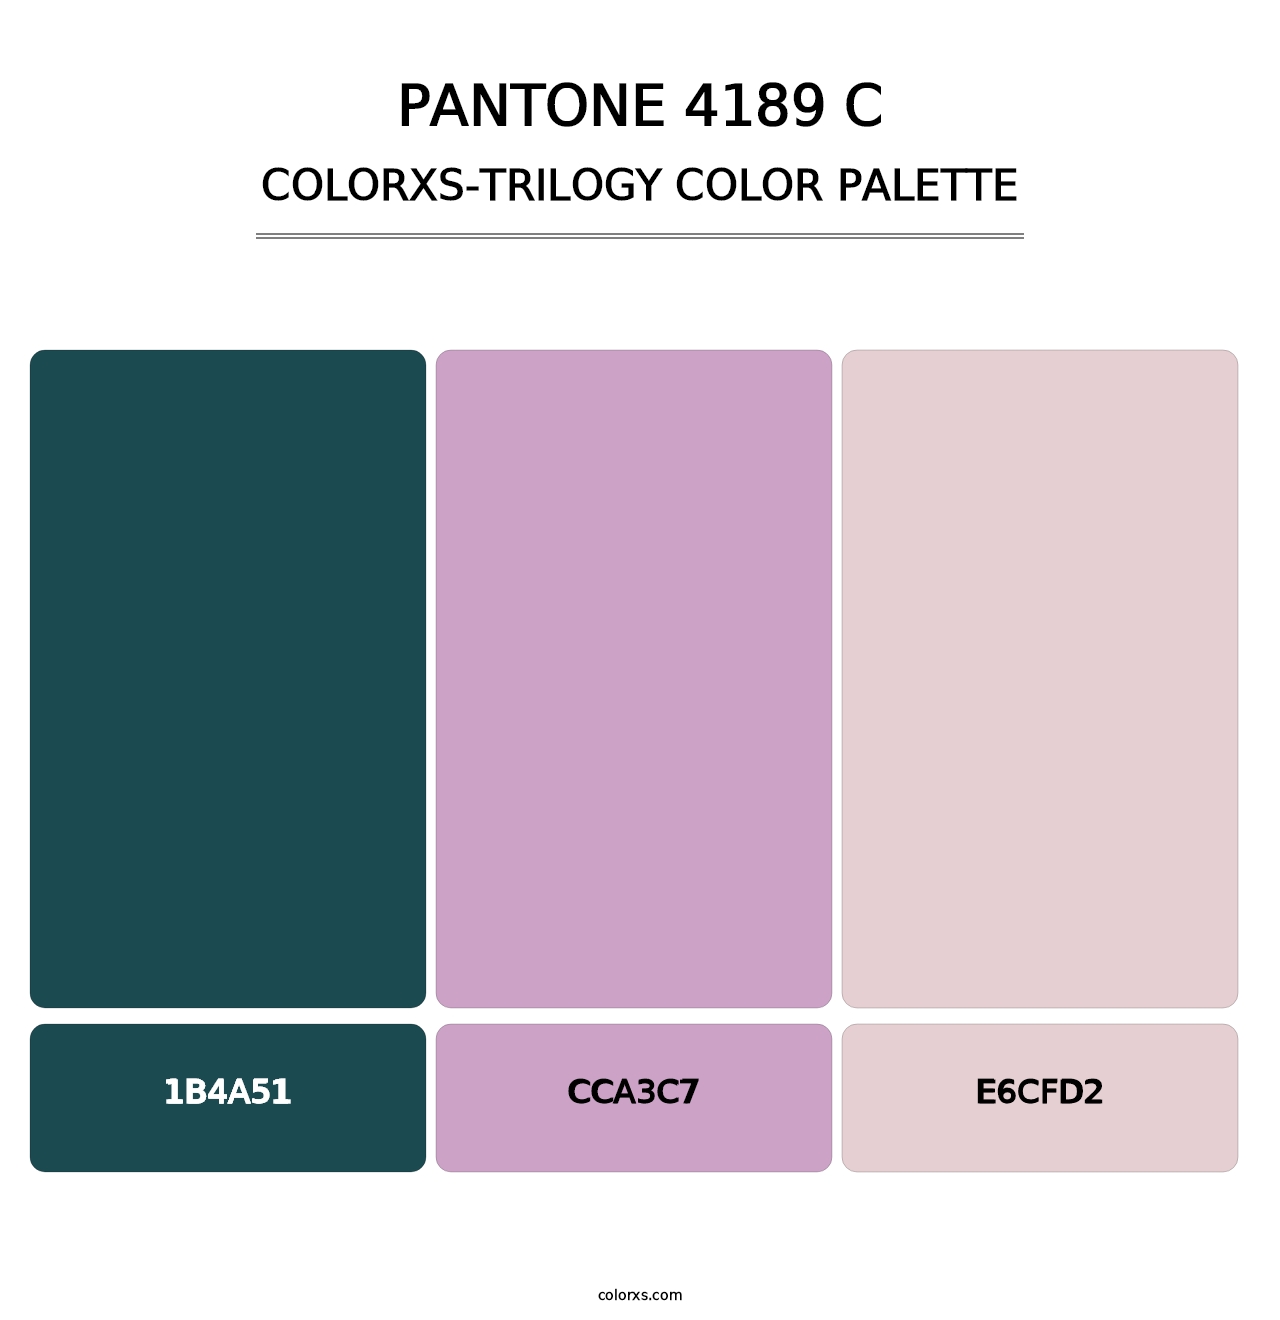 PANTONE 4189 C - Colorxs Trilogy Palette